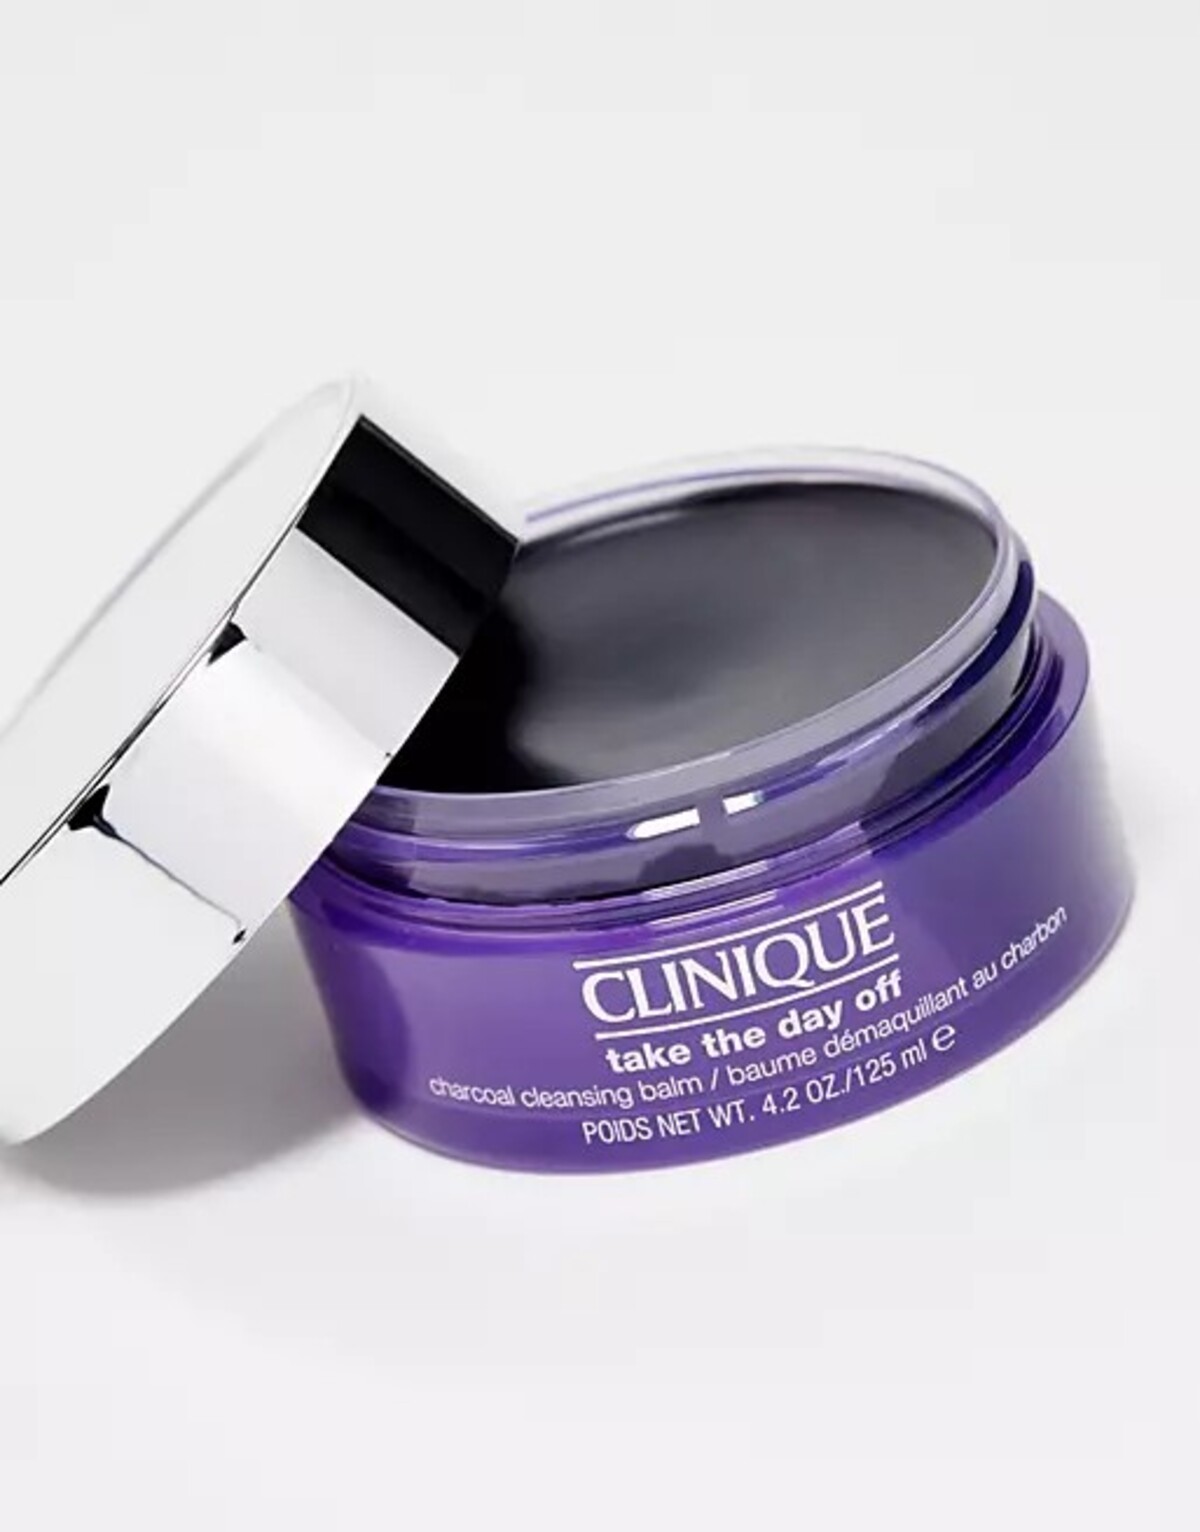 Clinique Take The Day Off Charcoal Cleansing Balm Makeup Remover: Balzamový odličovač, ktorý bez problémov zvládne dlhotrvajúci mejkap aj vodoodolnú špirálu. Miesto 46 € teraz zaplatíš 32,20 €.